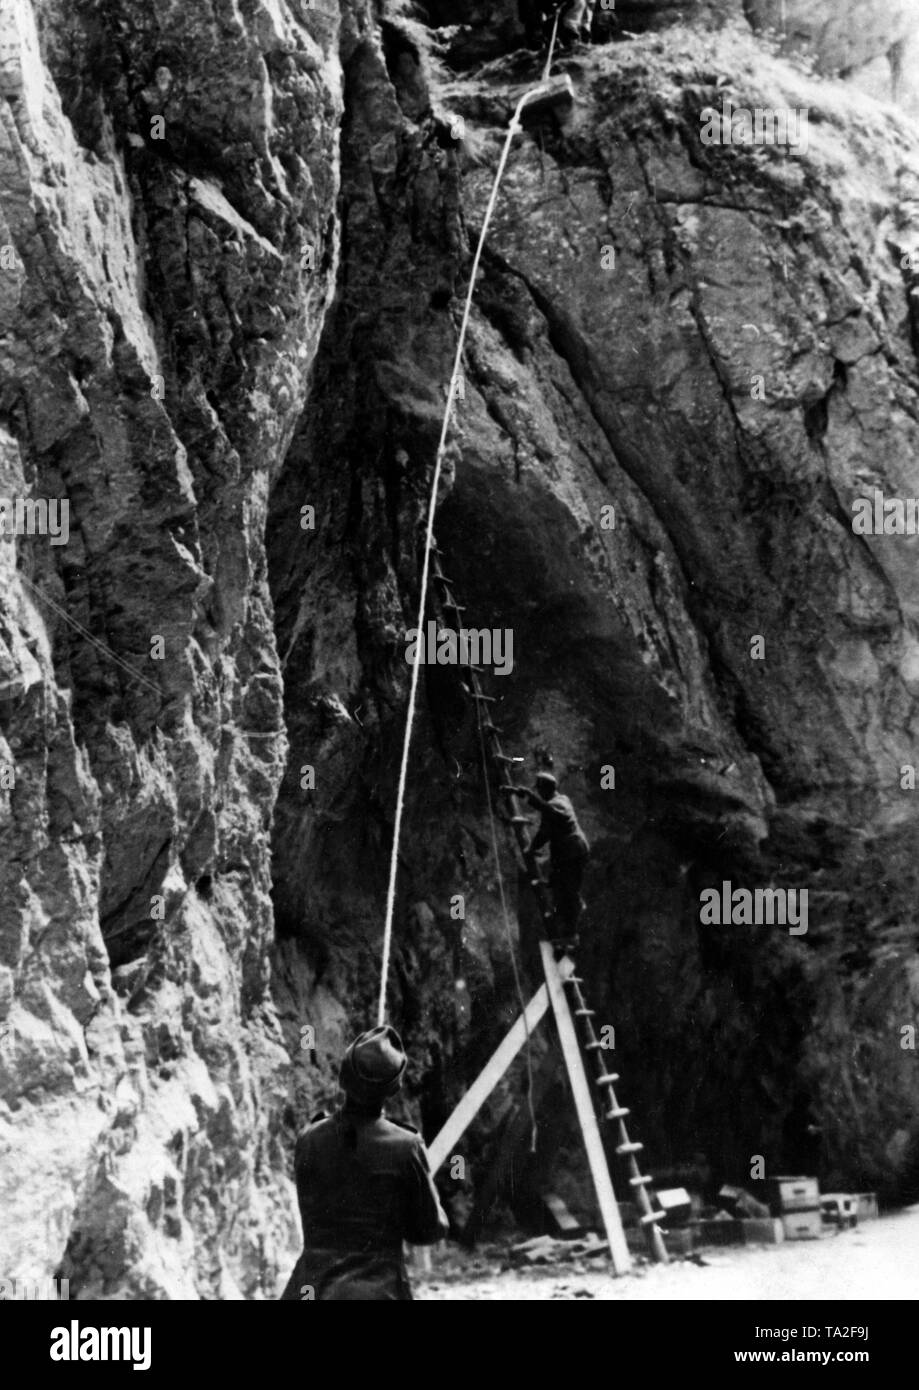 Pionniers de la Wehrmacht fixer plusieurs tonnes d'explosifs avec des échelles et des cordes dans une paroi rocheuse dans les Carpates. Photo de l'entreprise de propagande (PK) correspondant de guerre Mittelstaedt : Banque D'Images